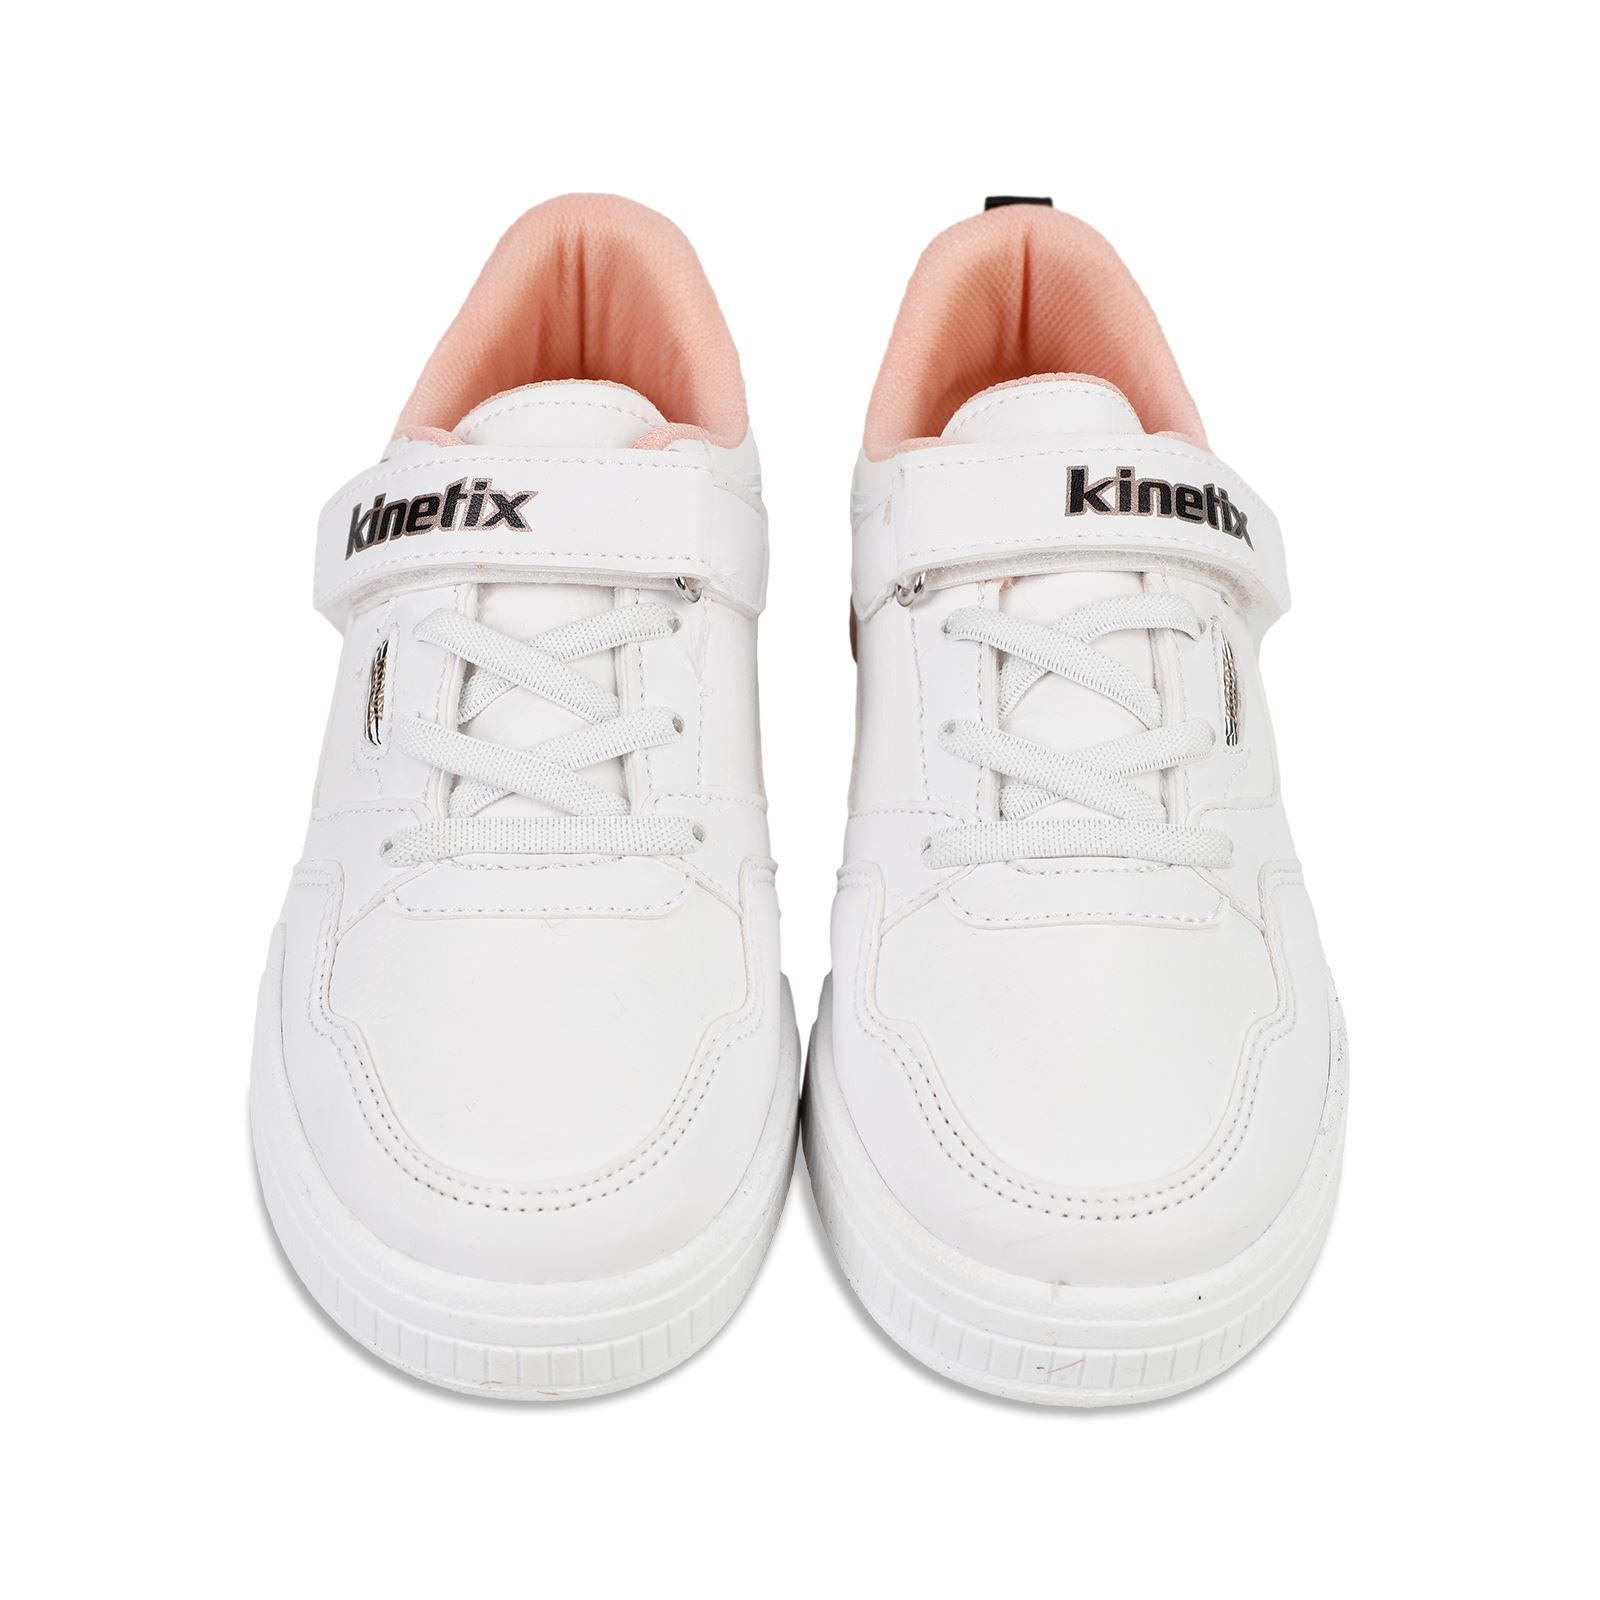 Kinetix Kız Çocuk Spor Ayakkabı 31-35 Numara Beyaz